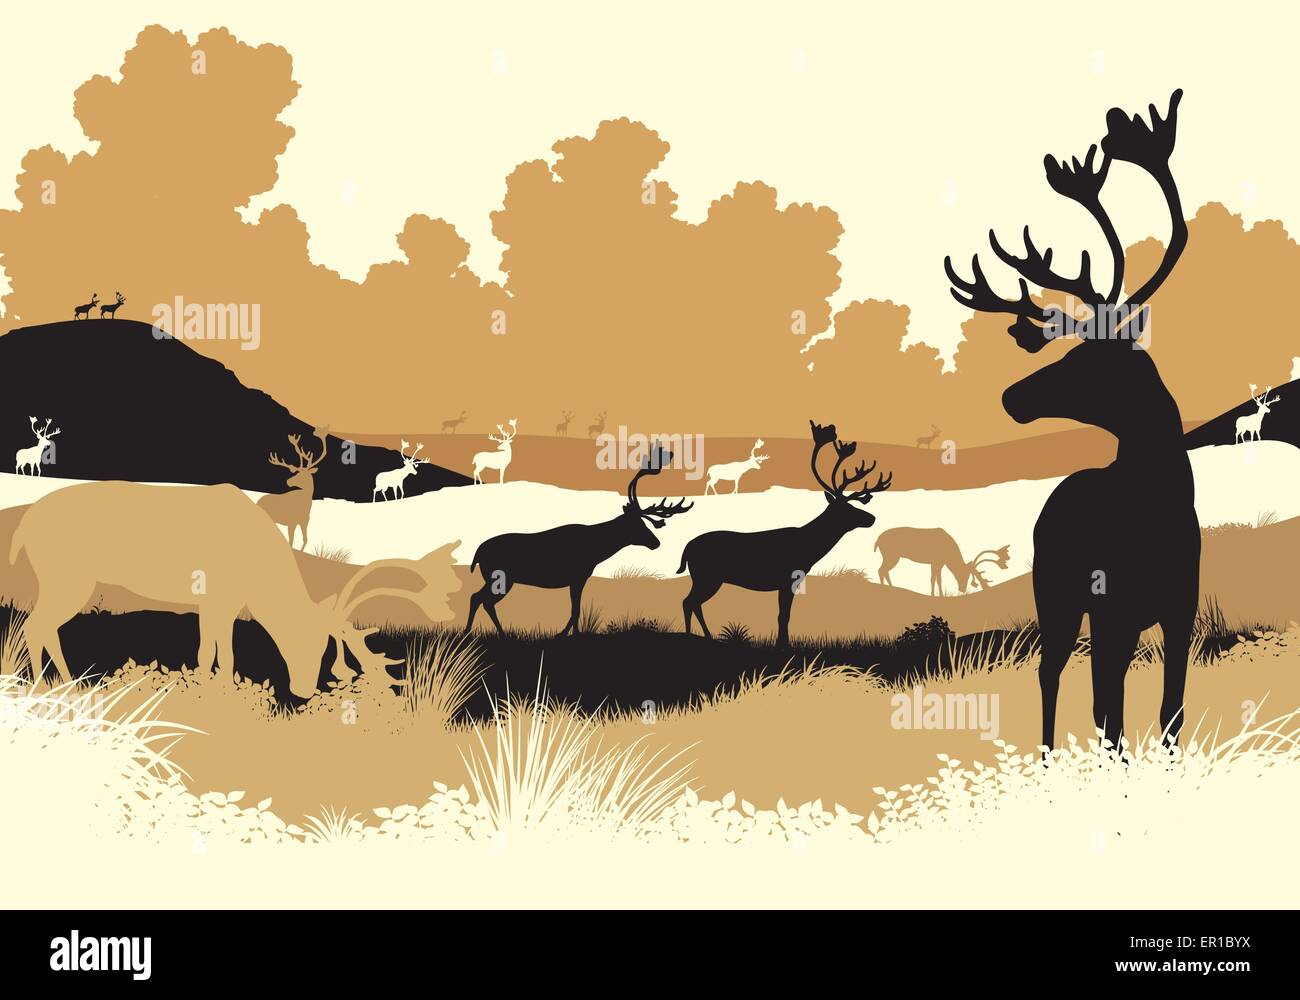 Spe8 illustration vectorielle modifiable de renne ou caribou se déplaçant à travers un paysage de toundra avec tous les chiffres en tant qu'objets séparés Illustration de Vecteur